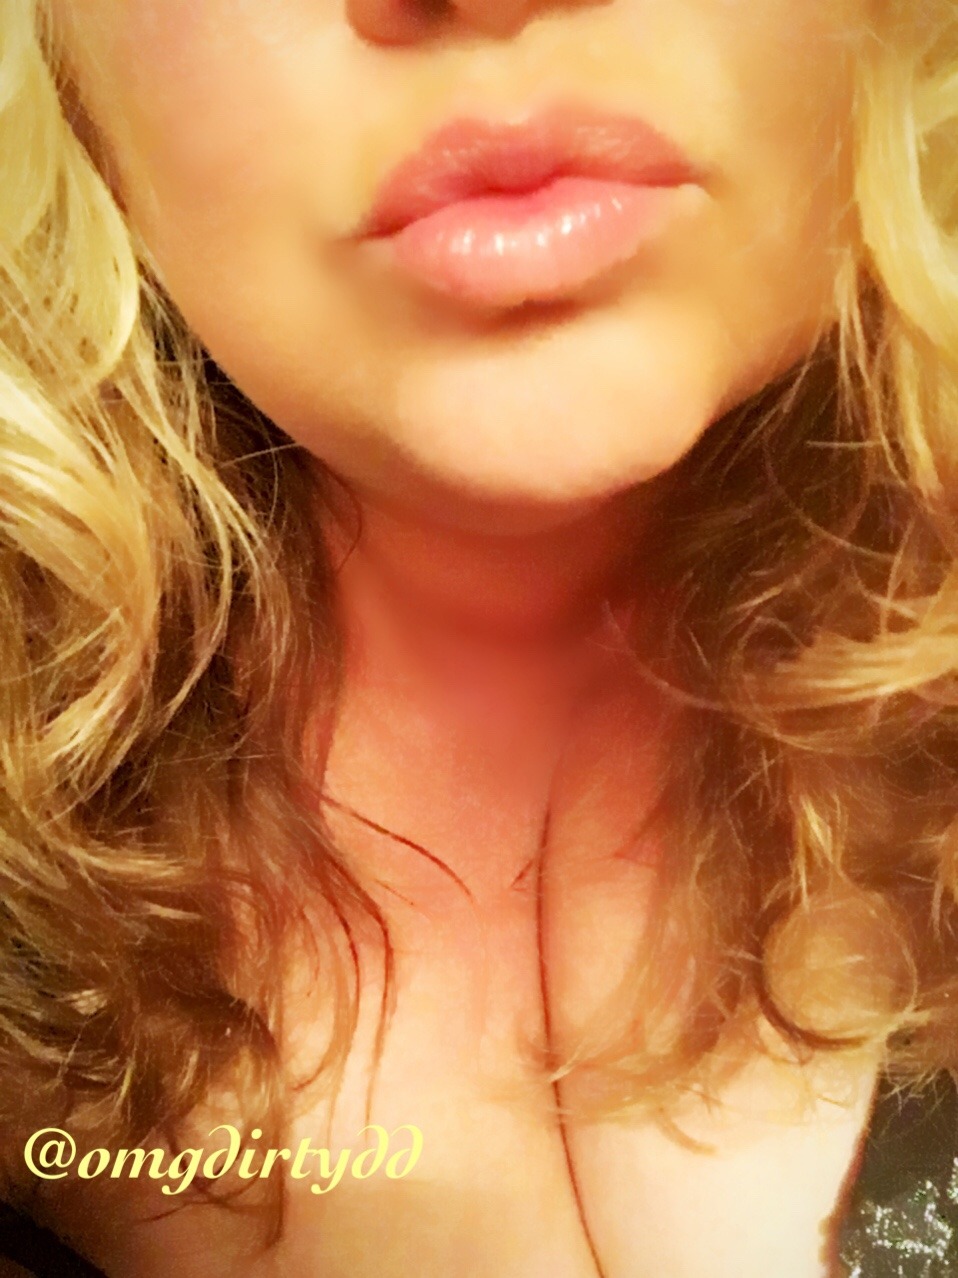 monchichitamberine:  Kissy lips on Mouth Monday ~ DD 💋  Omg @omgdirtydd!! Gorgeous